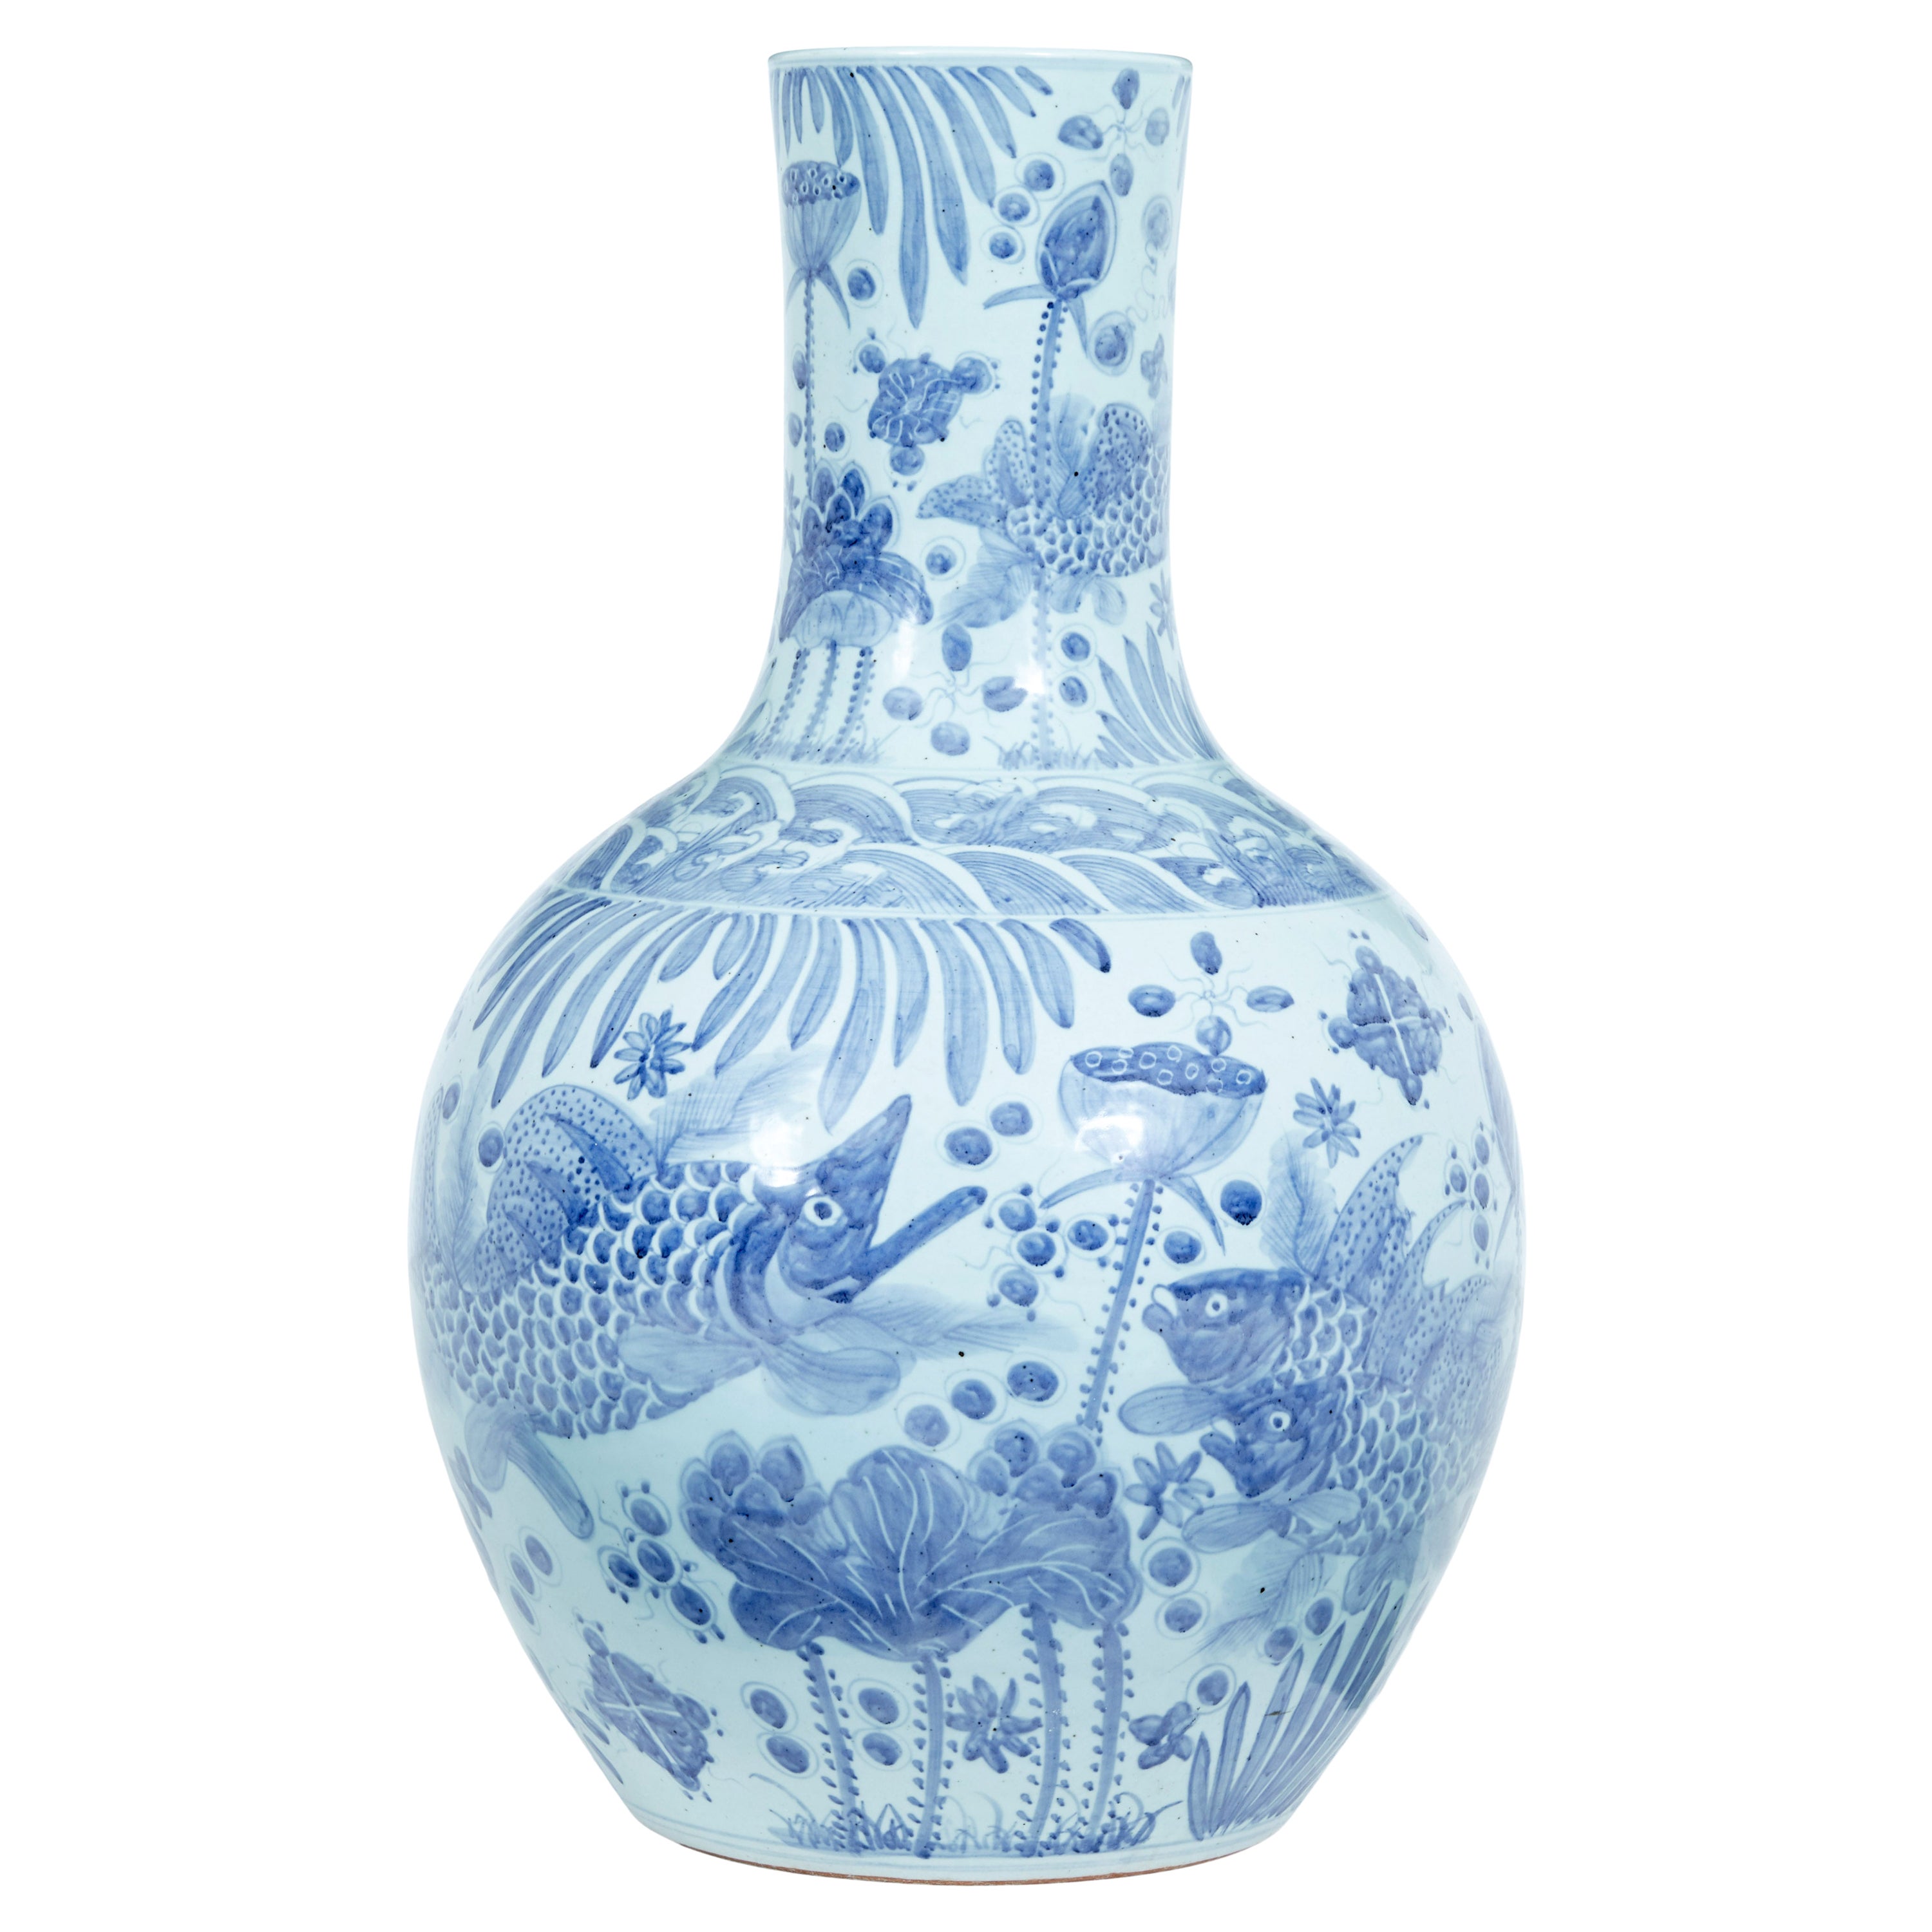 Large Decorative Blue and White Ceramic Chinese Vase